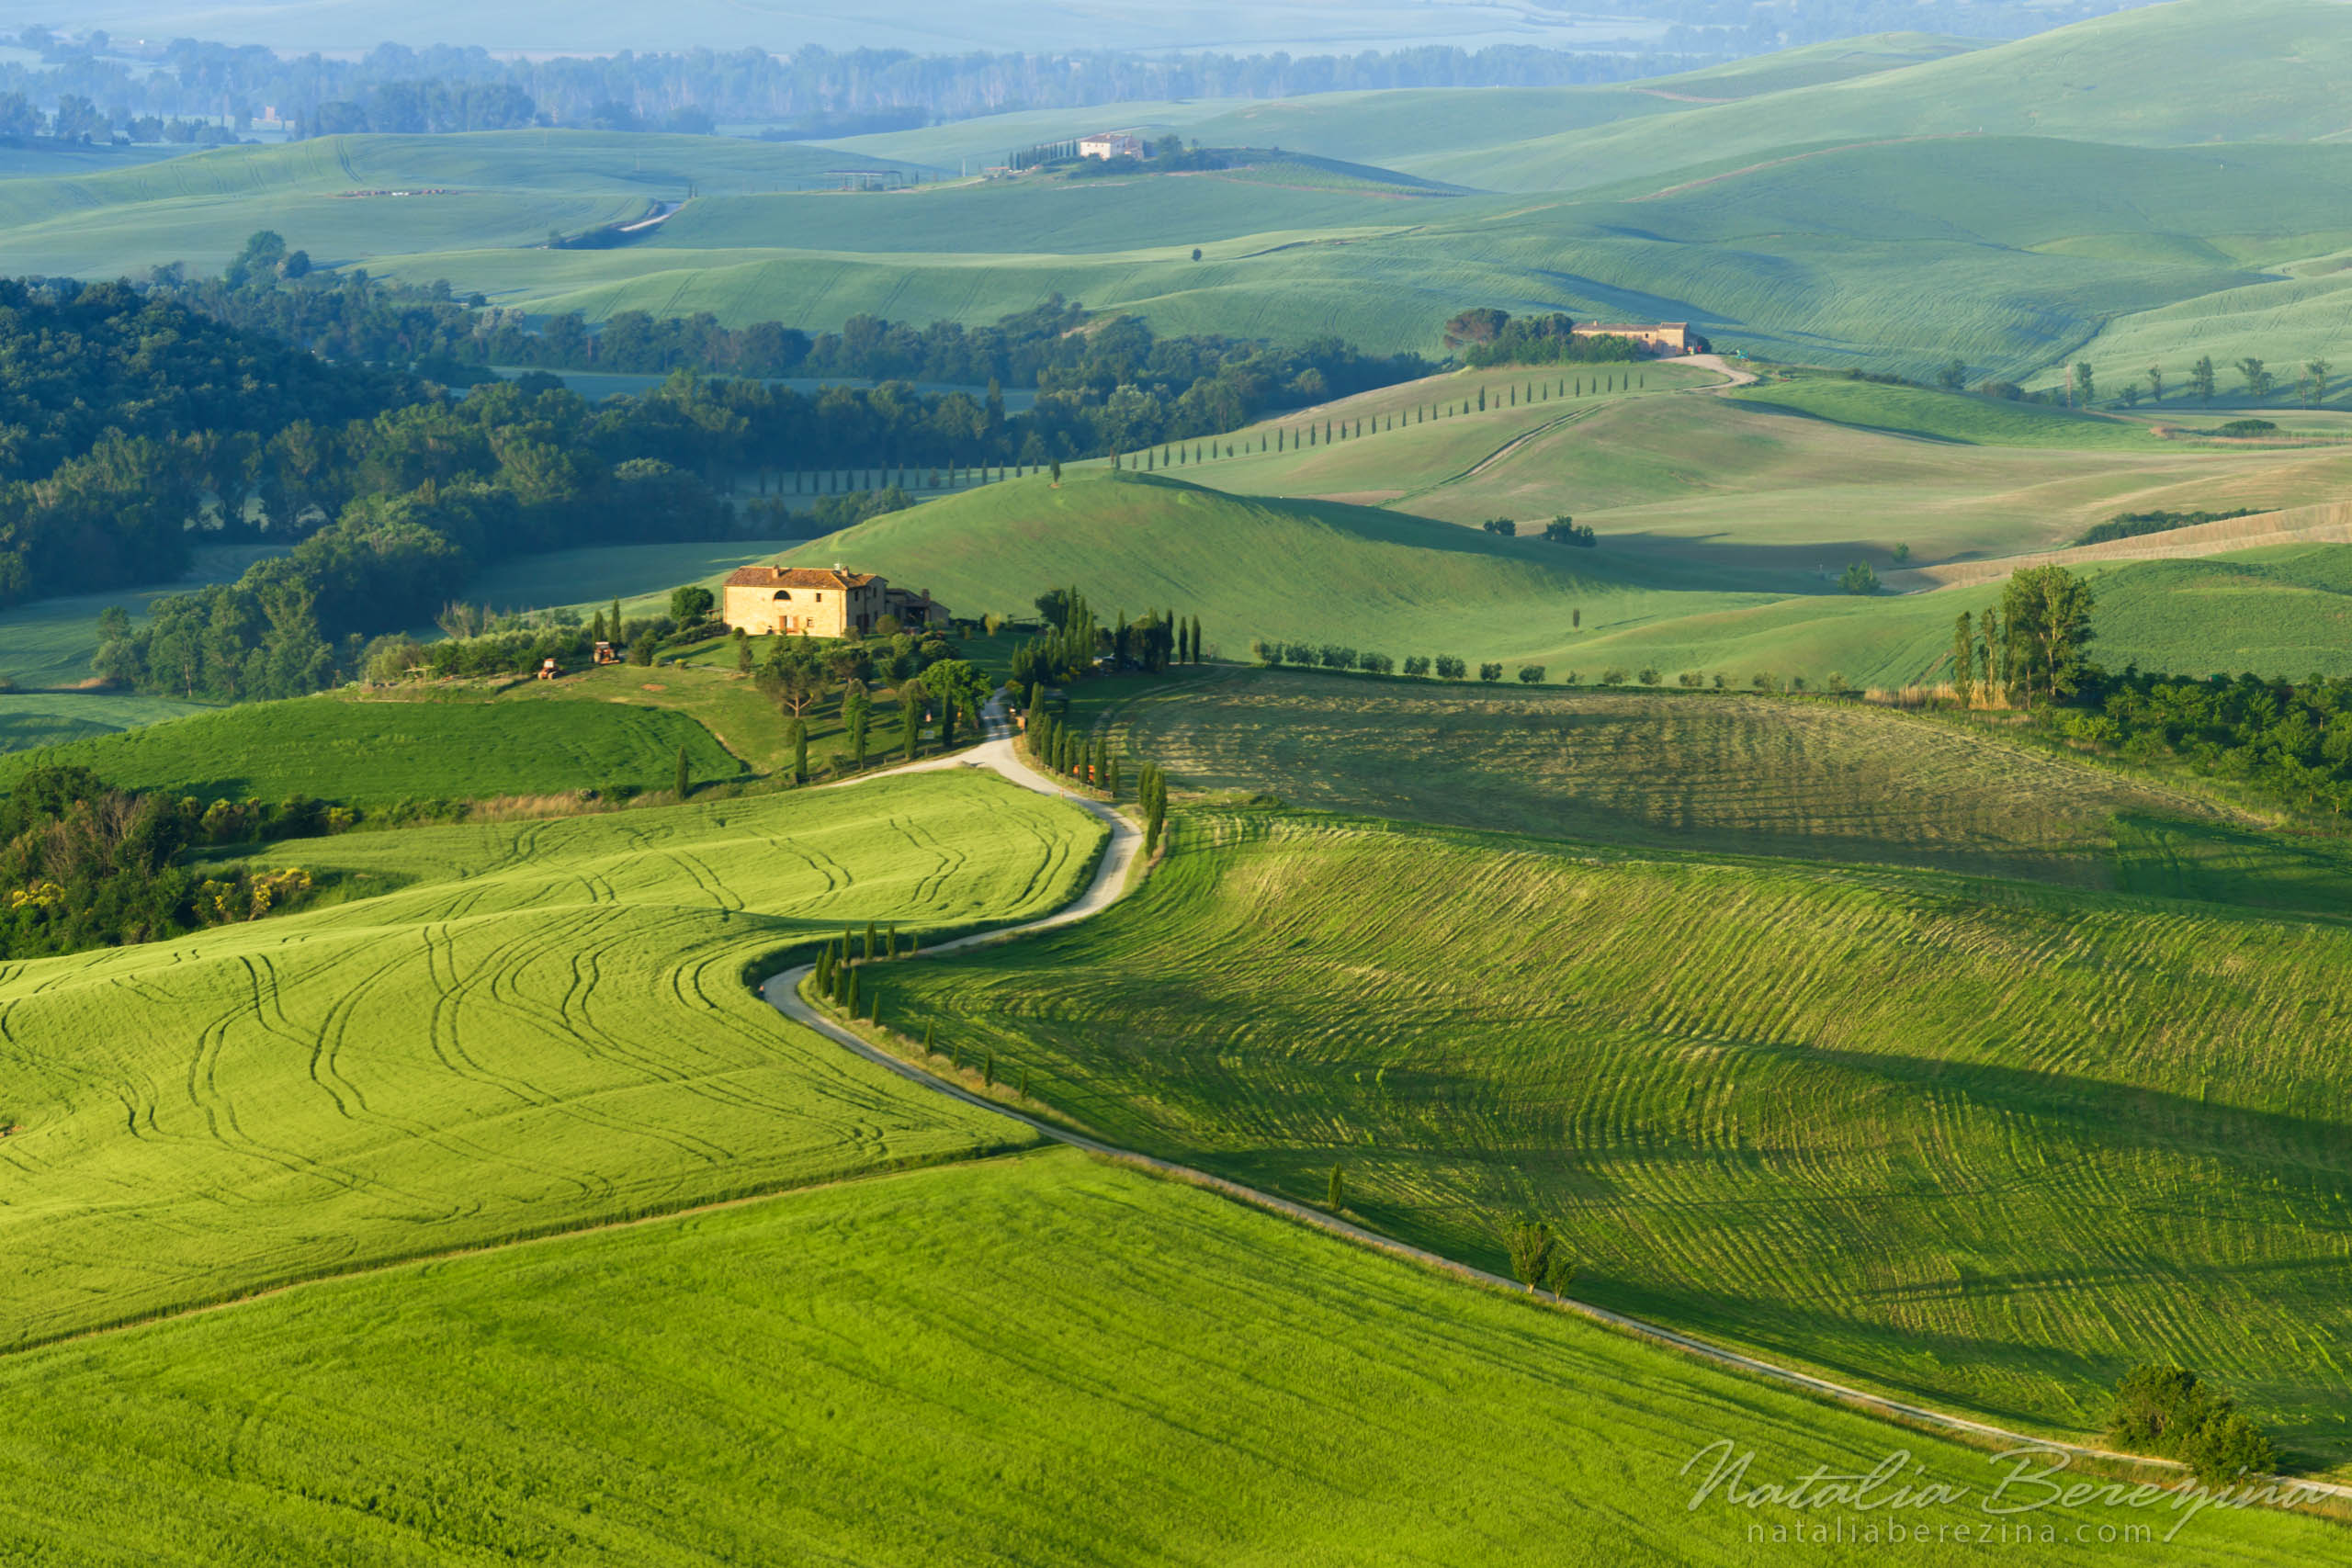 Tuscany, Italy, cityscape, green TU1-NBDK1U1677 - Tuscany, Italy - Natalia Berezina Photography